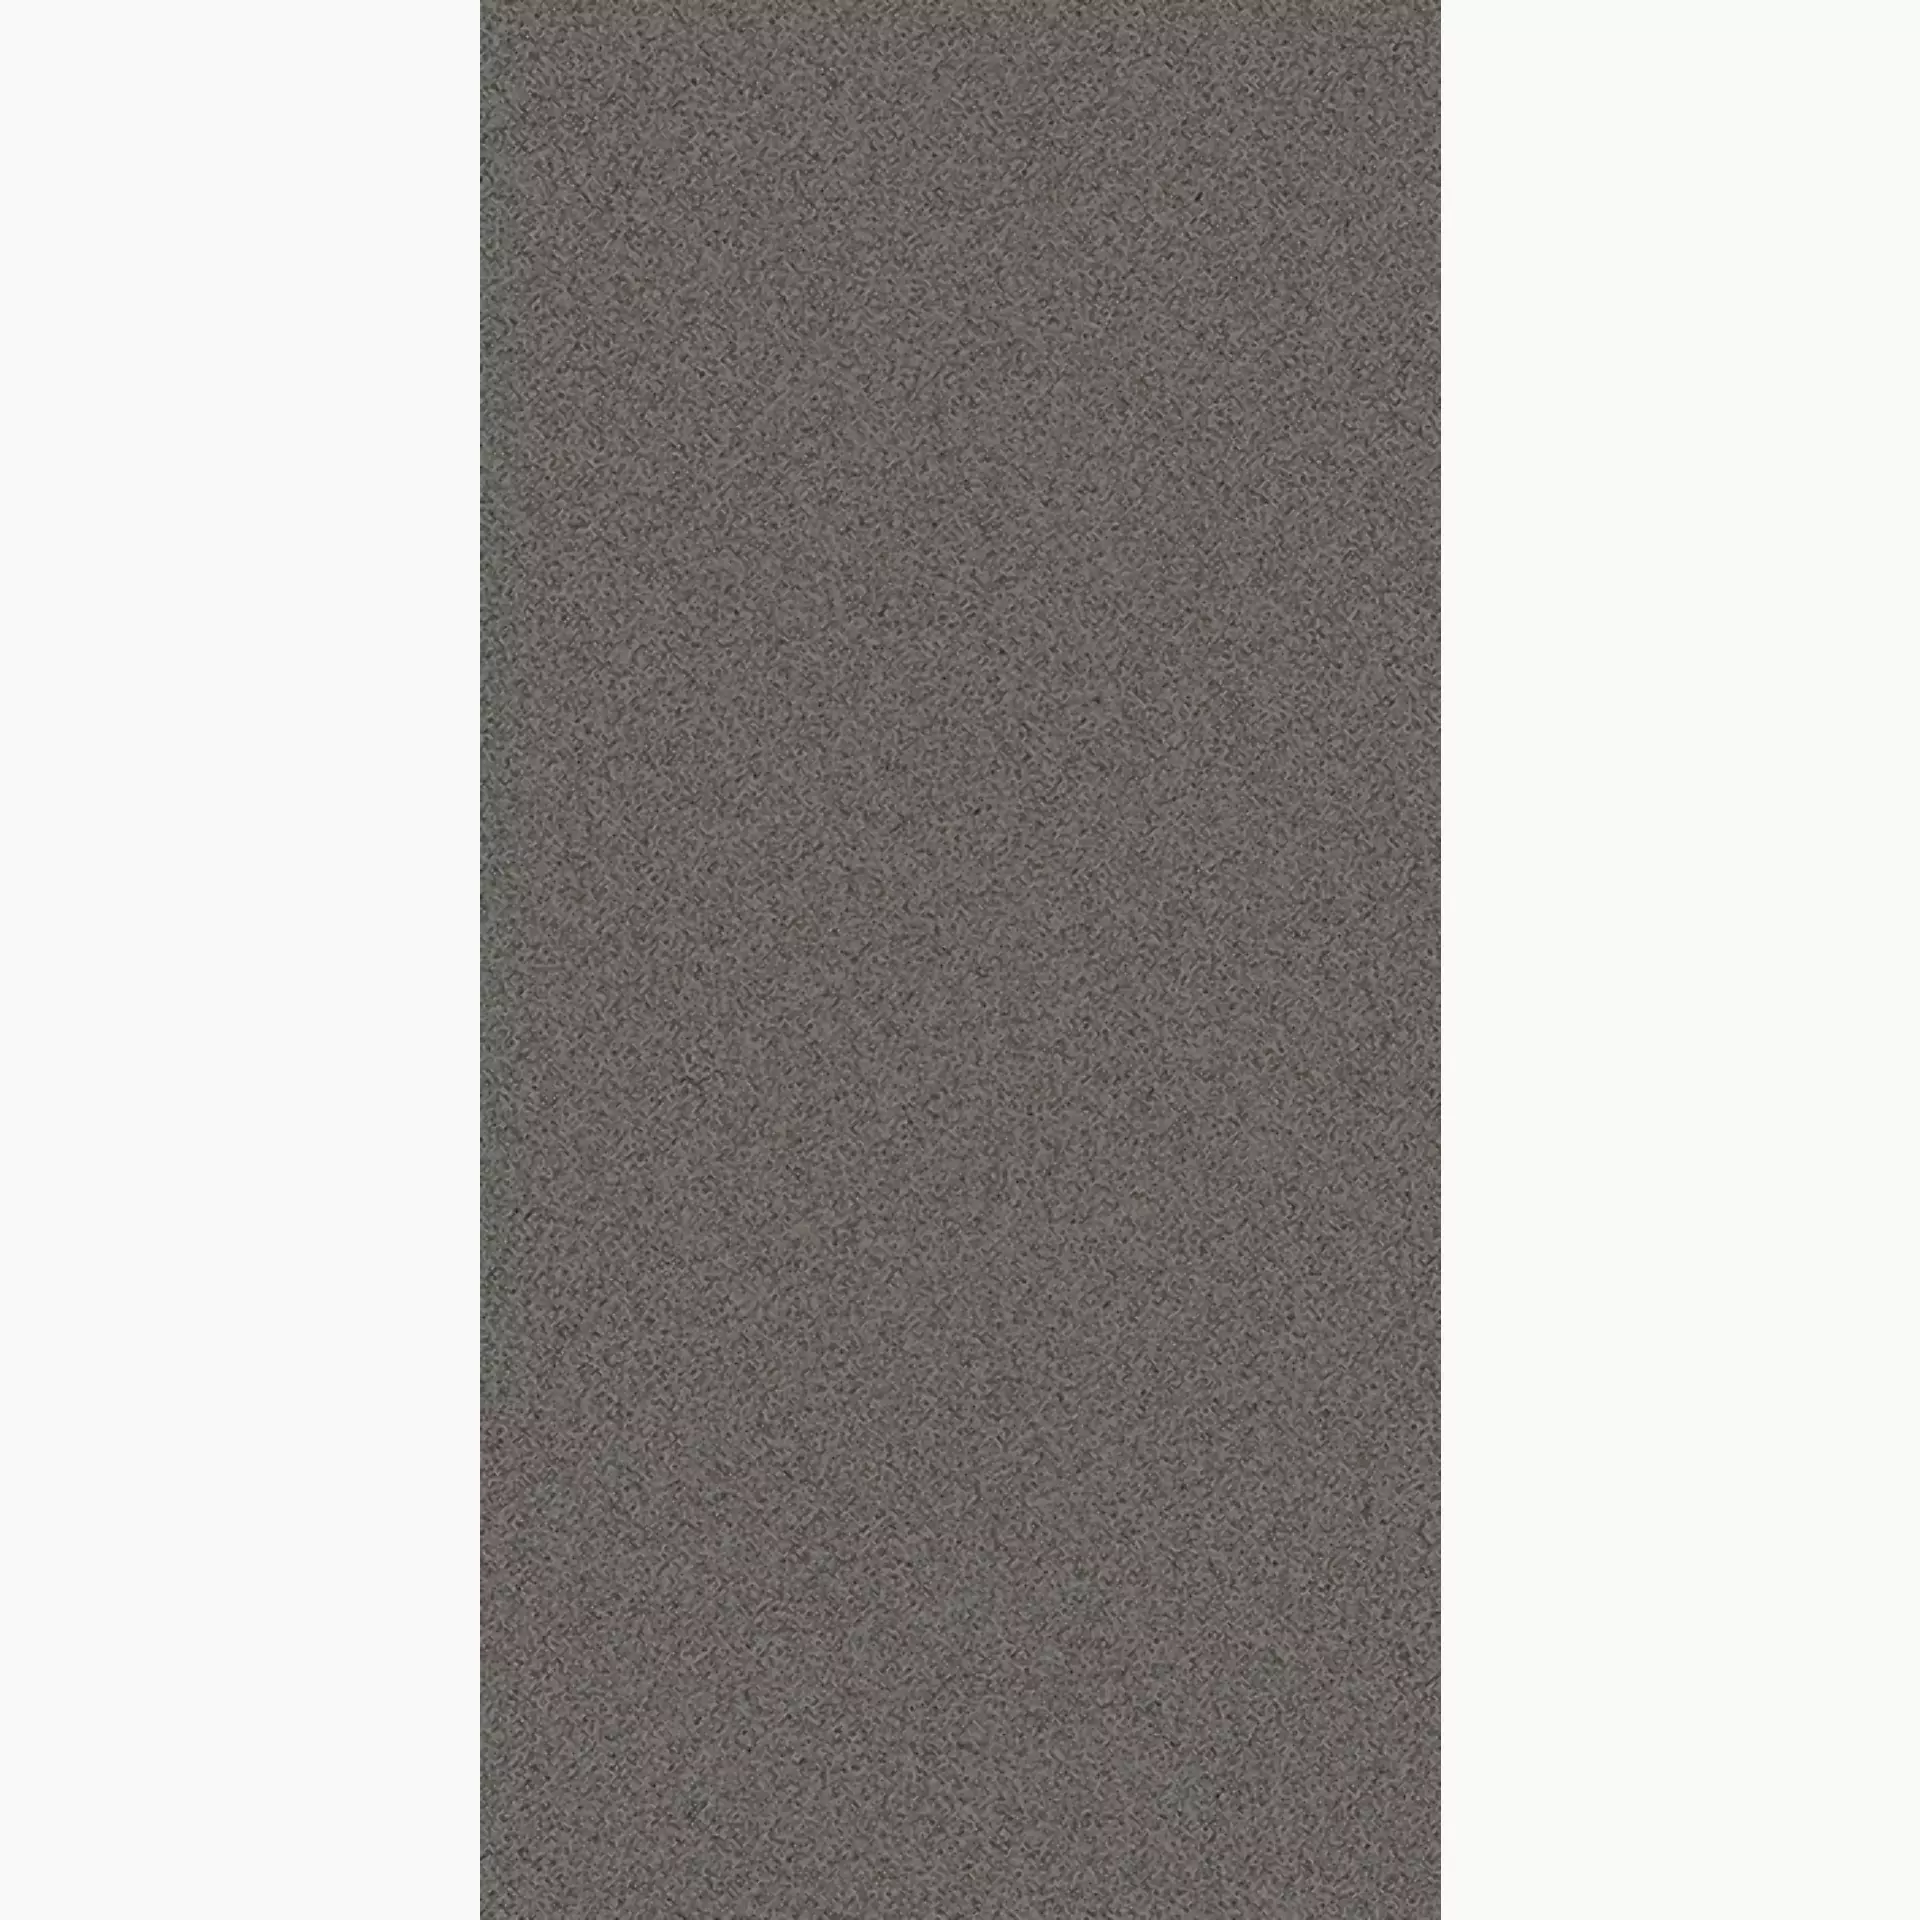 Wandfliese,Bodenfliese Villeroy & Boch Pure Line 2.0 Concrete Grey Matt Concrete Grey 2754-UL62 matt 30x60cm rektifiziert 12mm